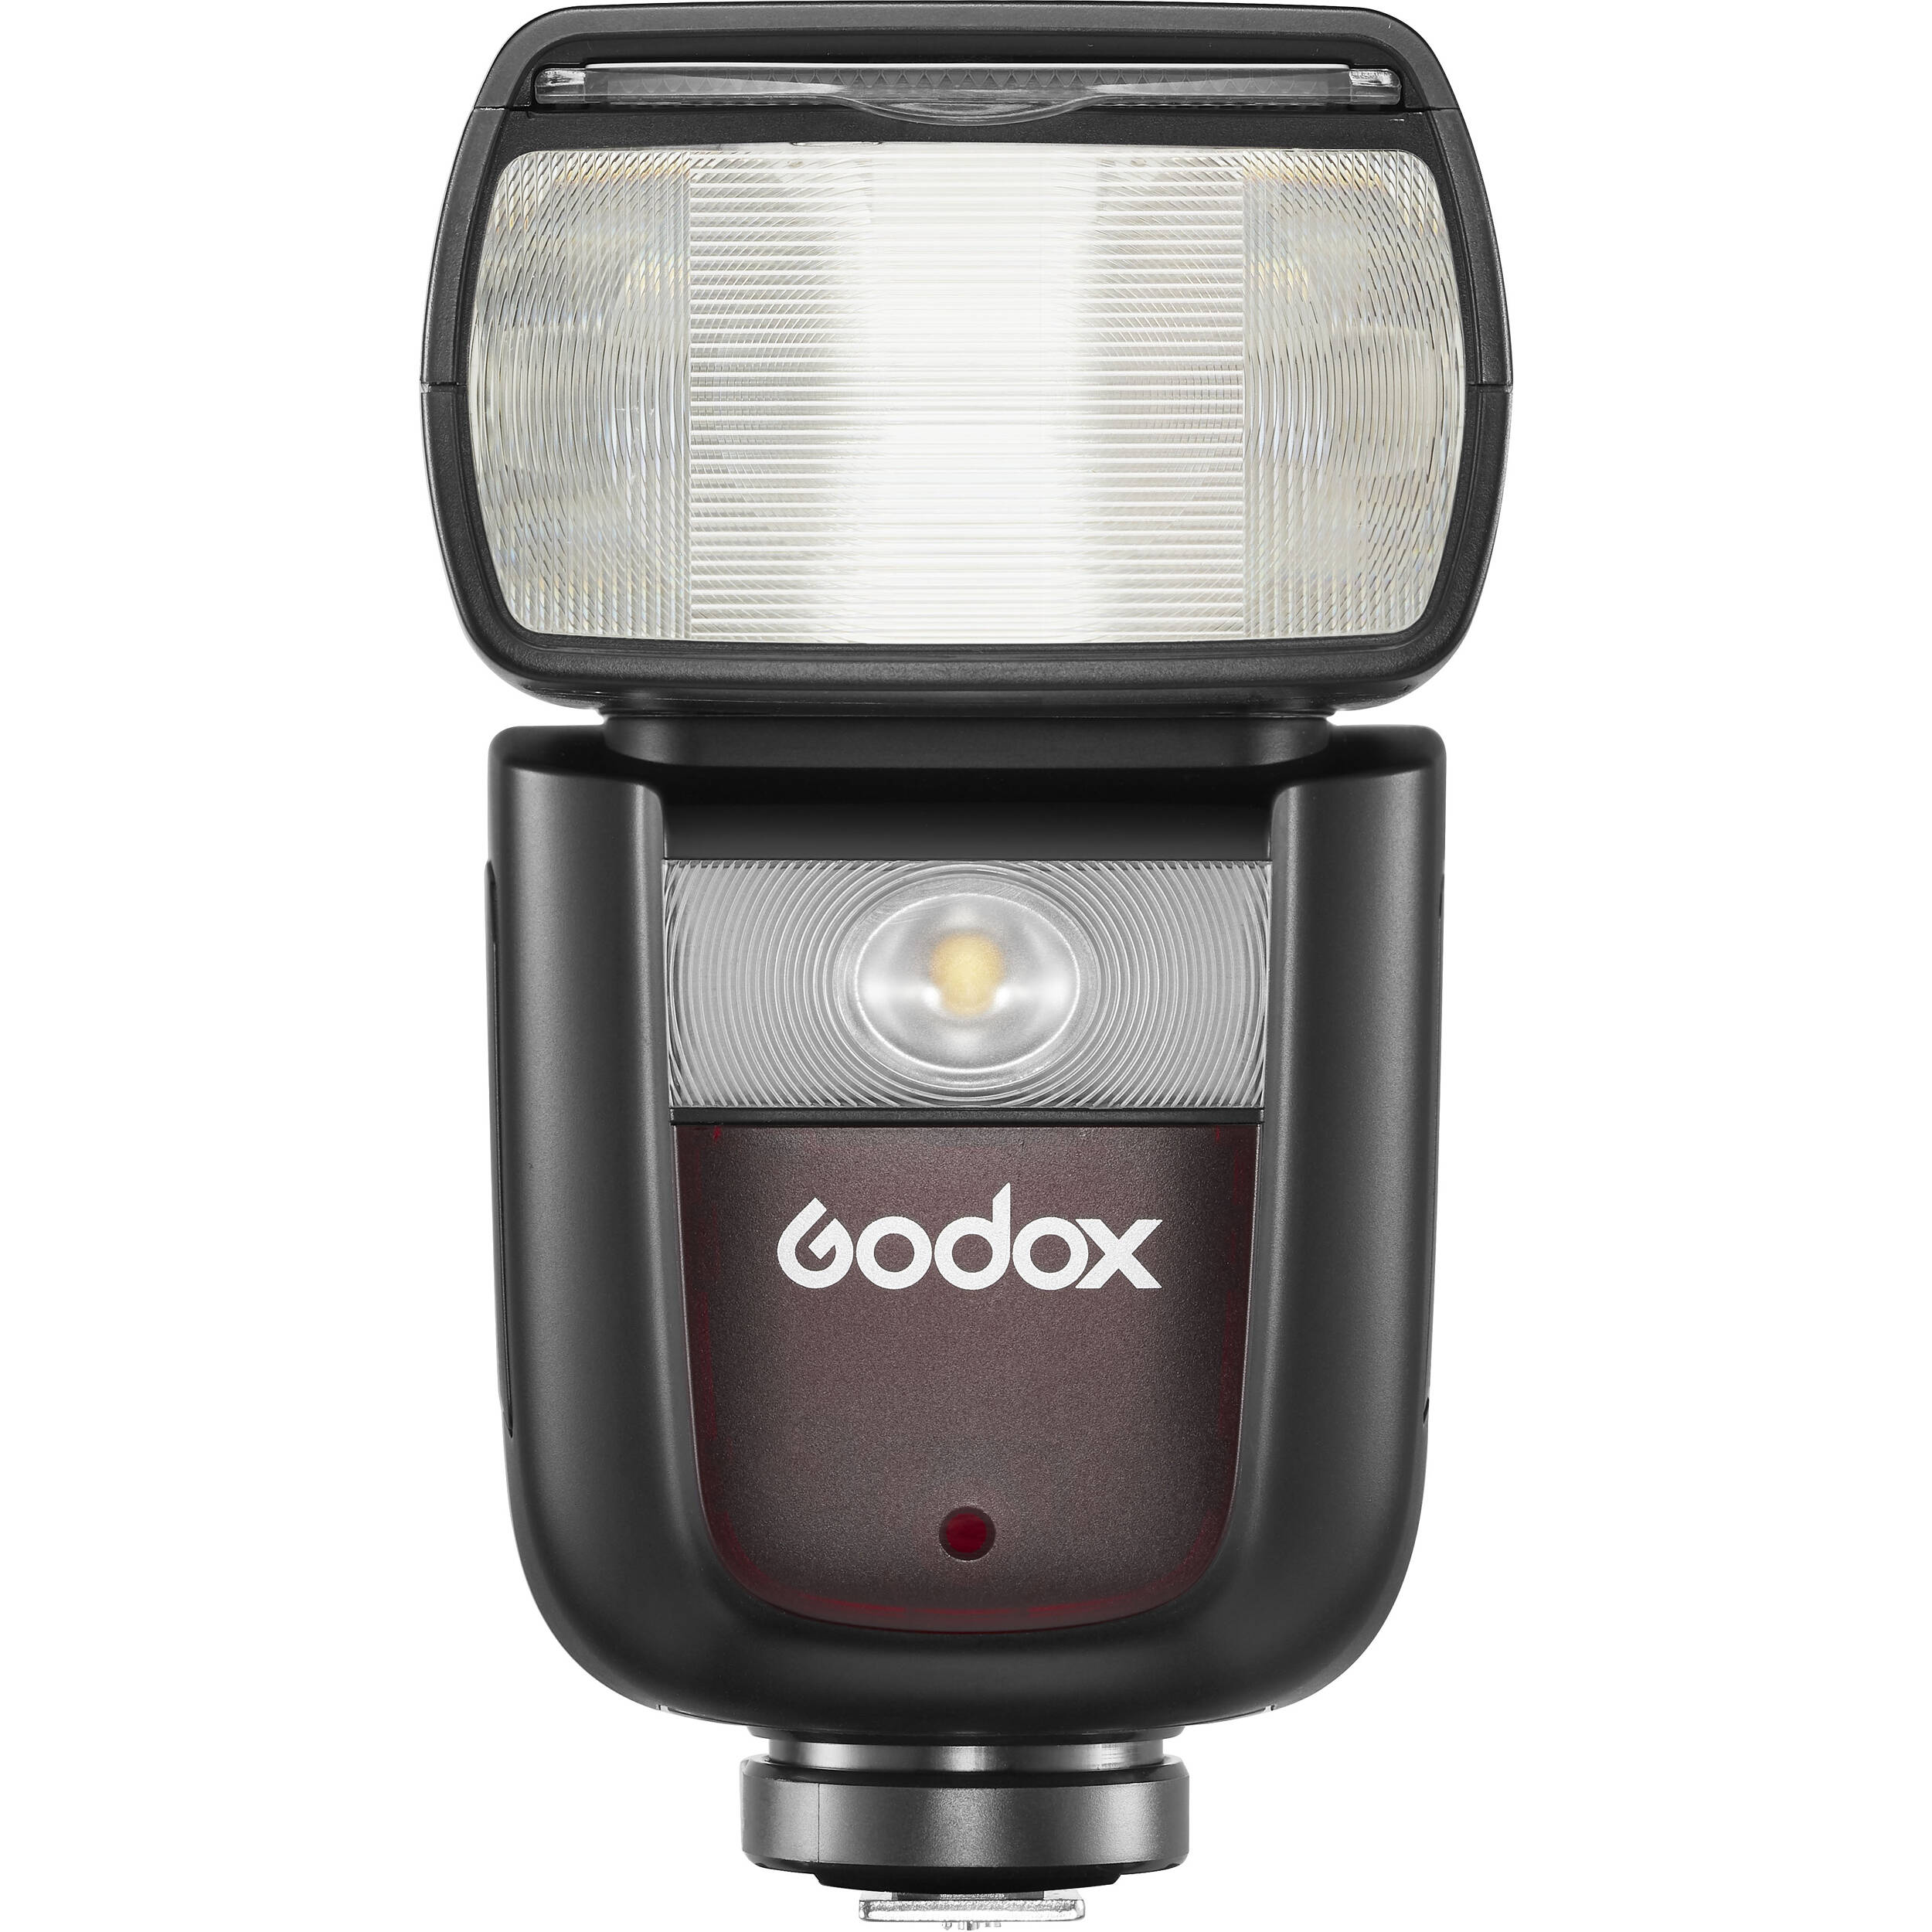 Đèn flash Godox V860III for Nikon, Sony, Canon, Fujifilm ... trang bị nhiều tính năng nổi bật